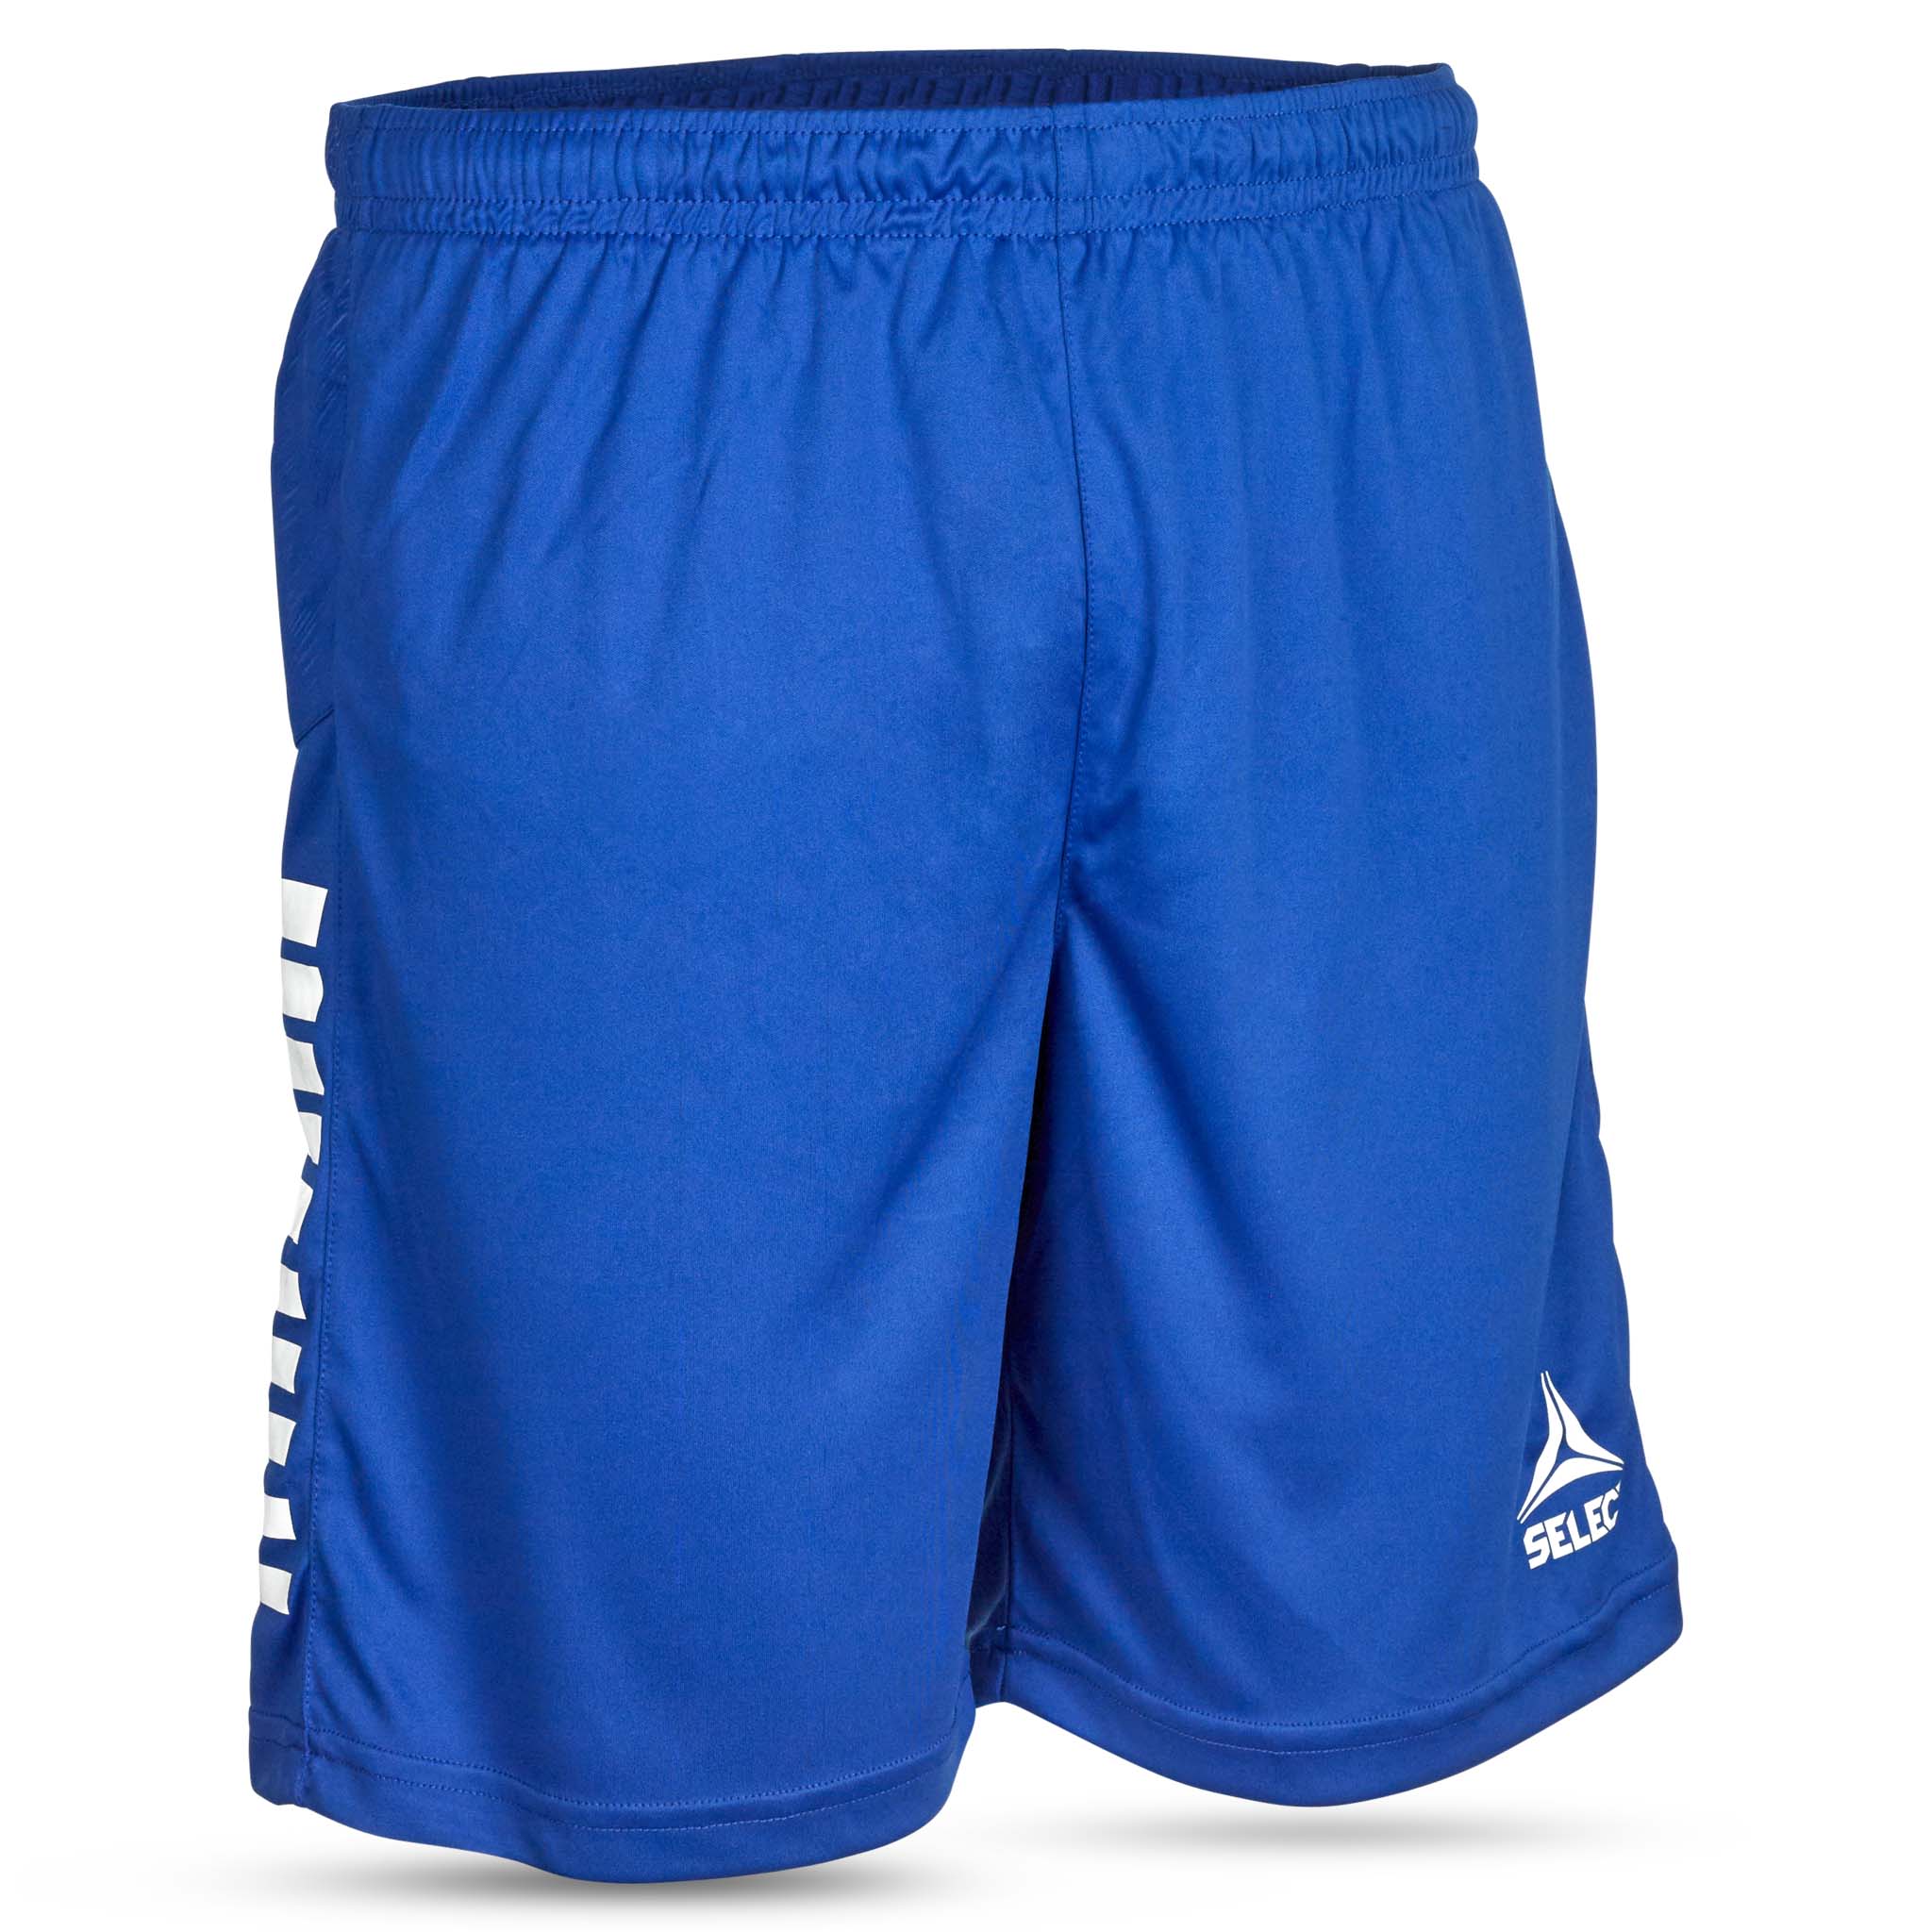 Spain Shorts - Børn #farve_blå